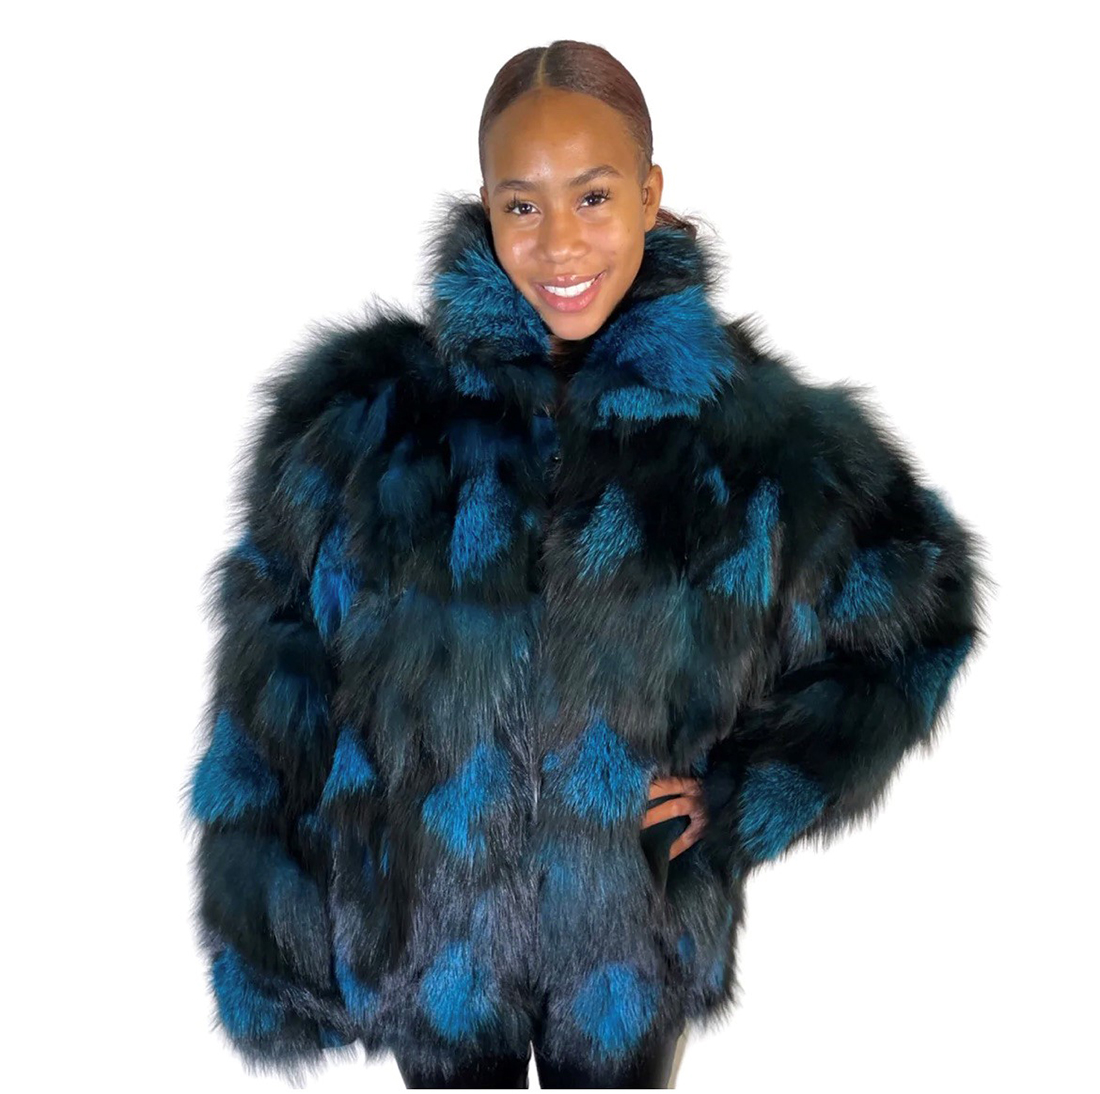 Welcome to Alaskan Fur! - Alaskan Fur